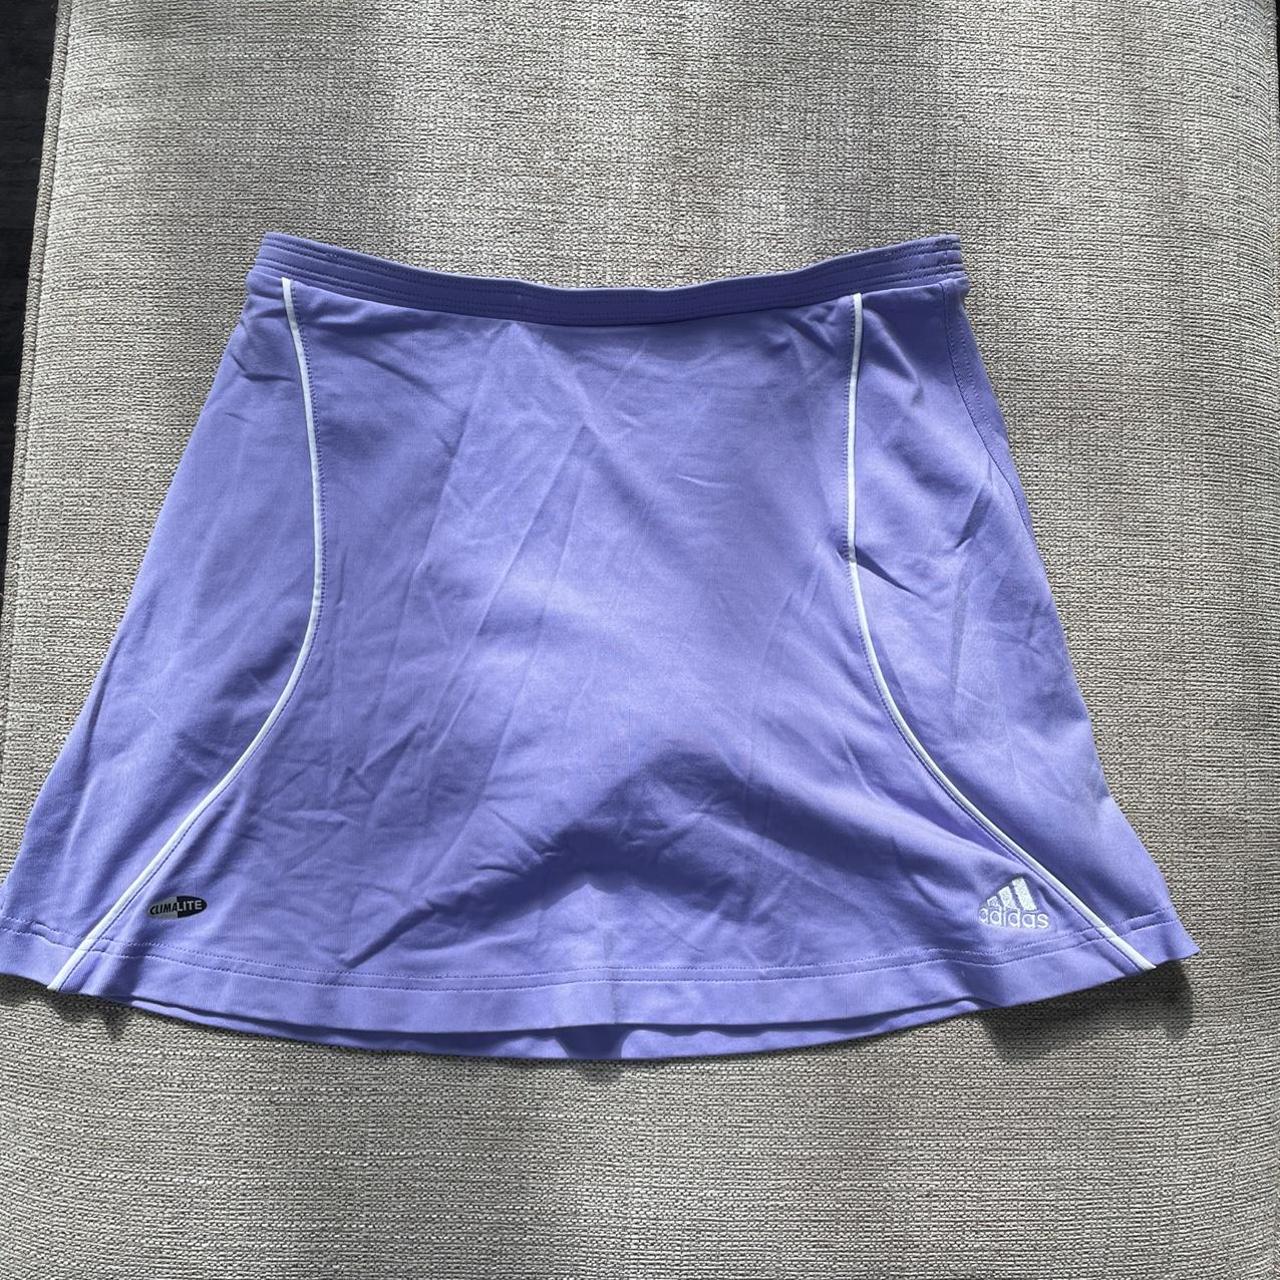 Adidas Women's Purple and White Skirt